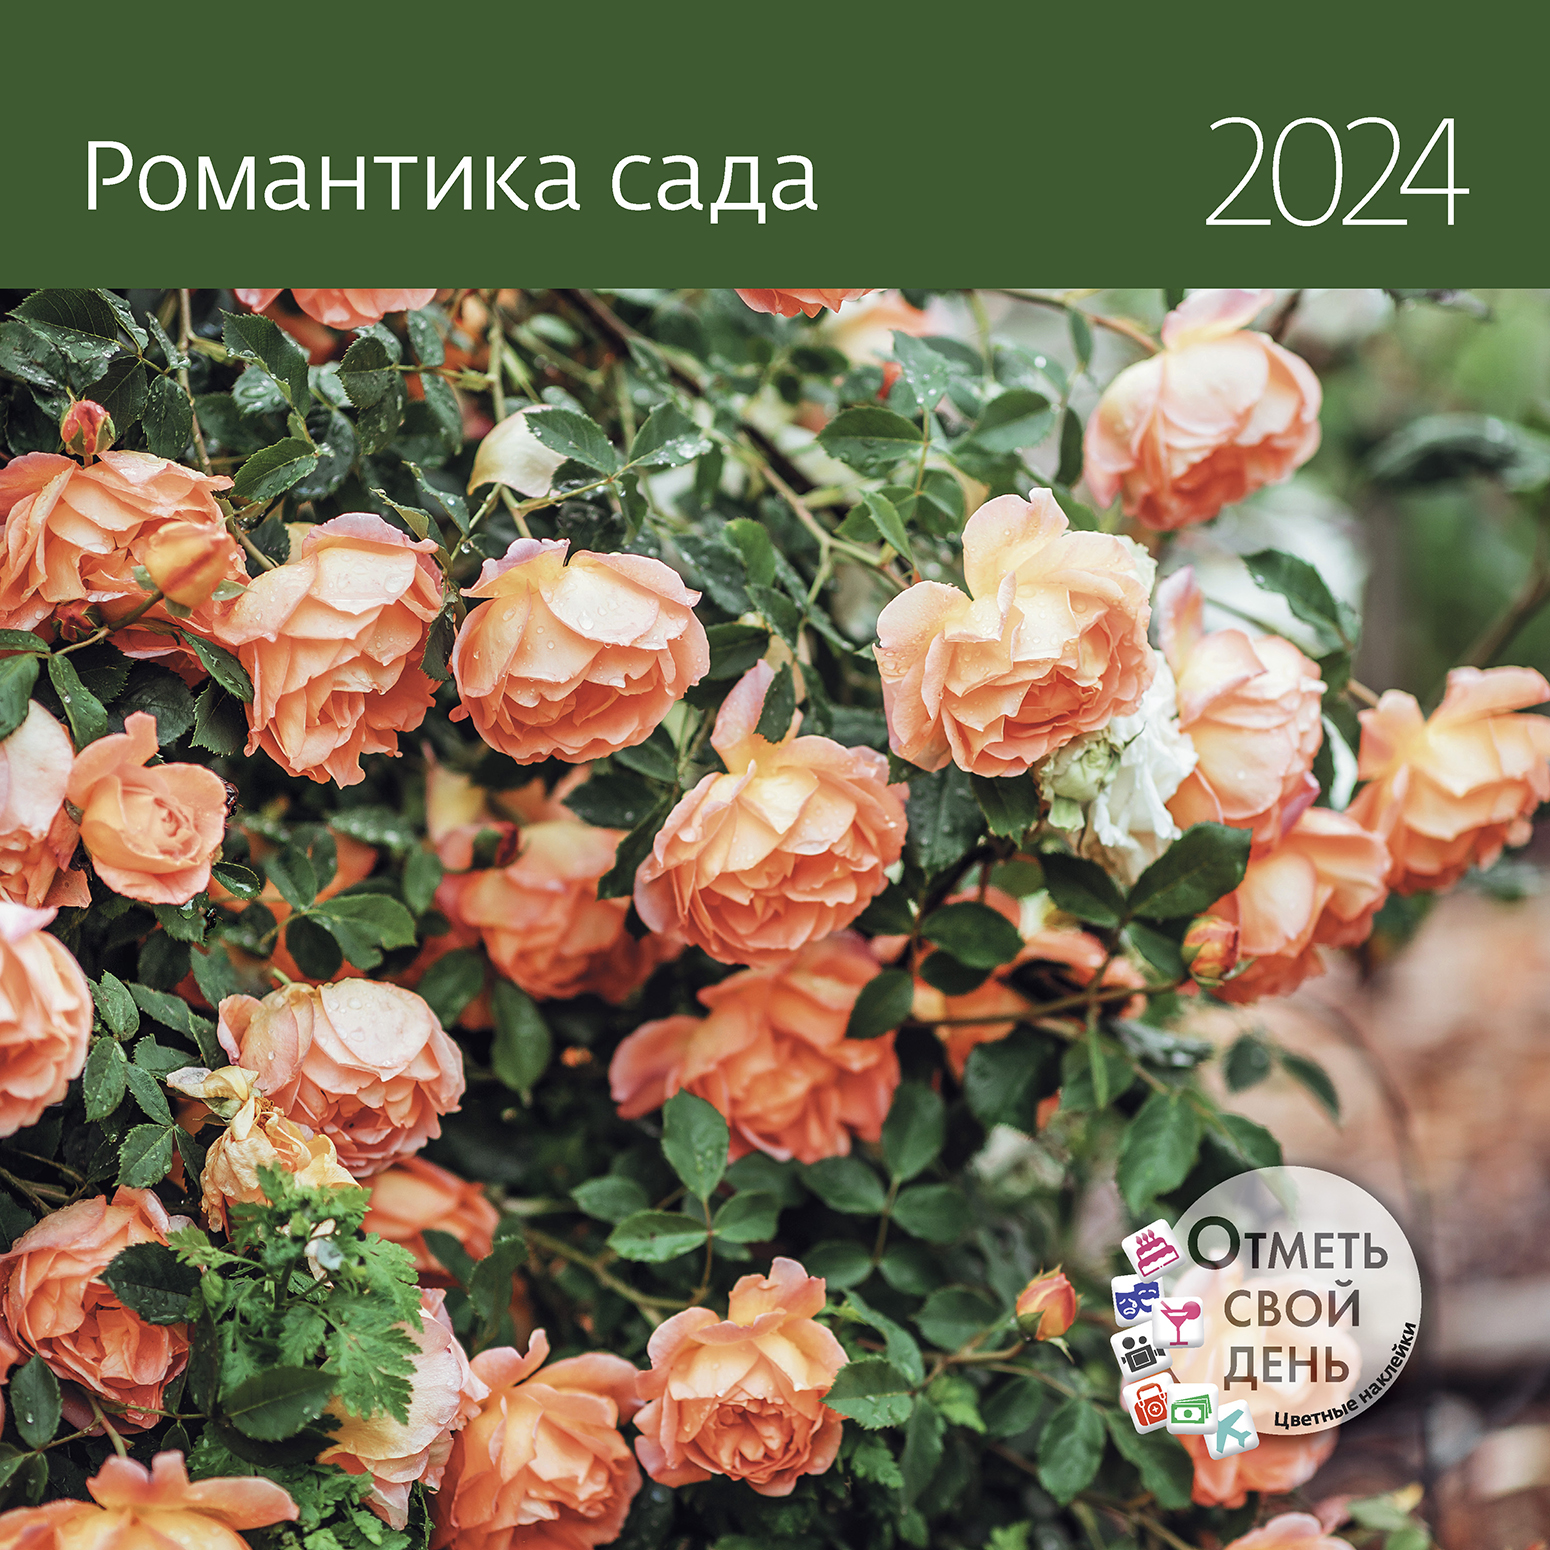 Календарь органайзер Романтика сада 2024